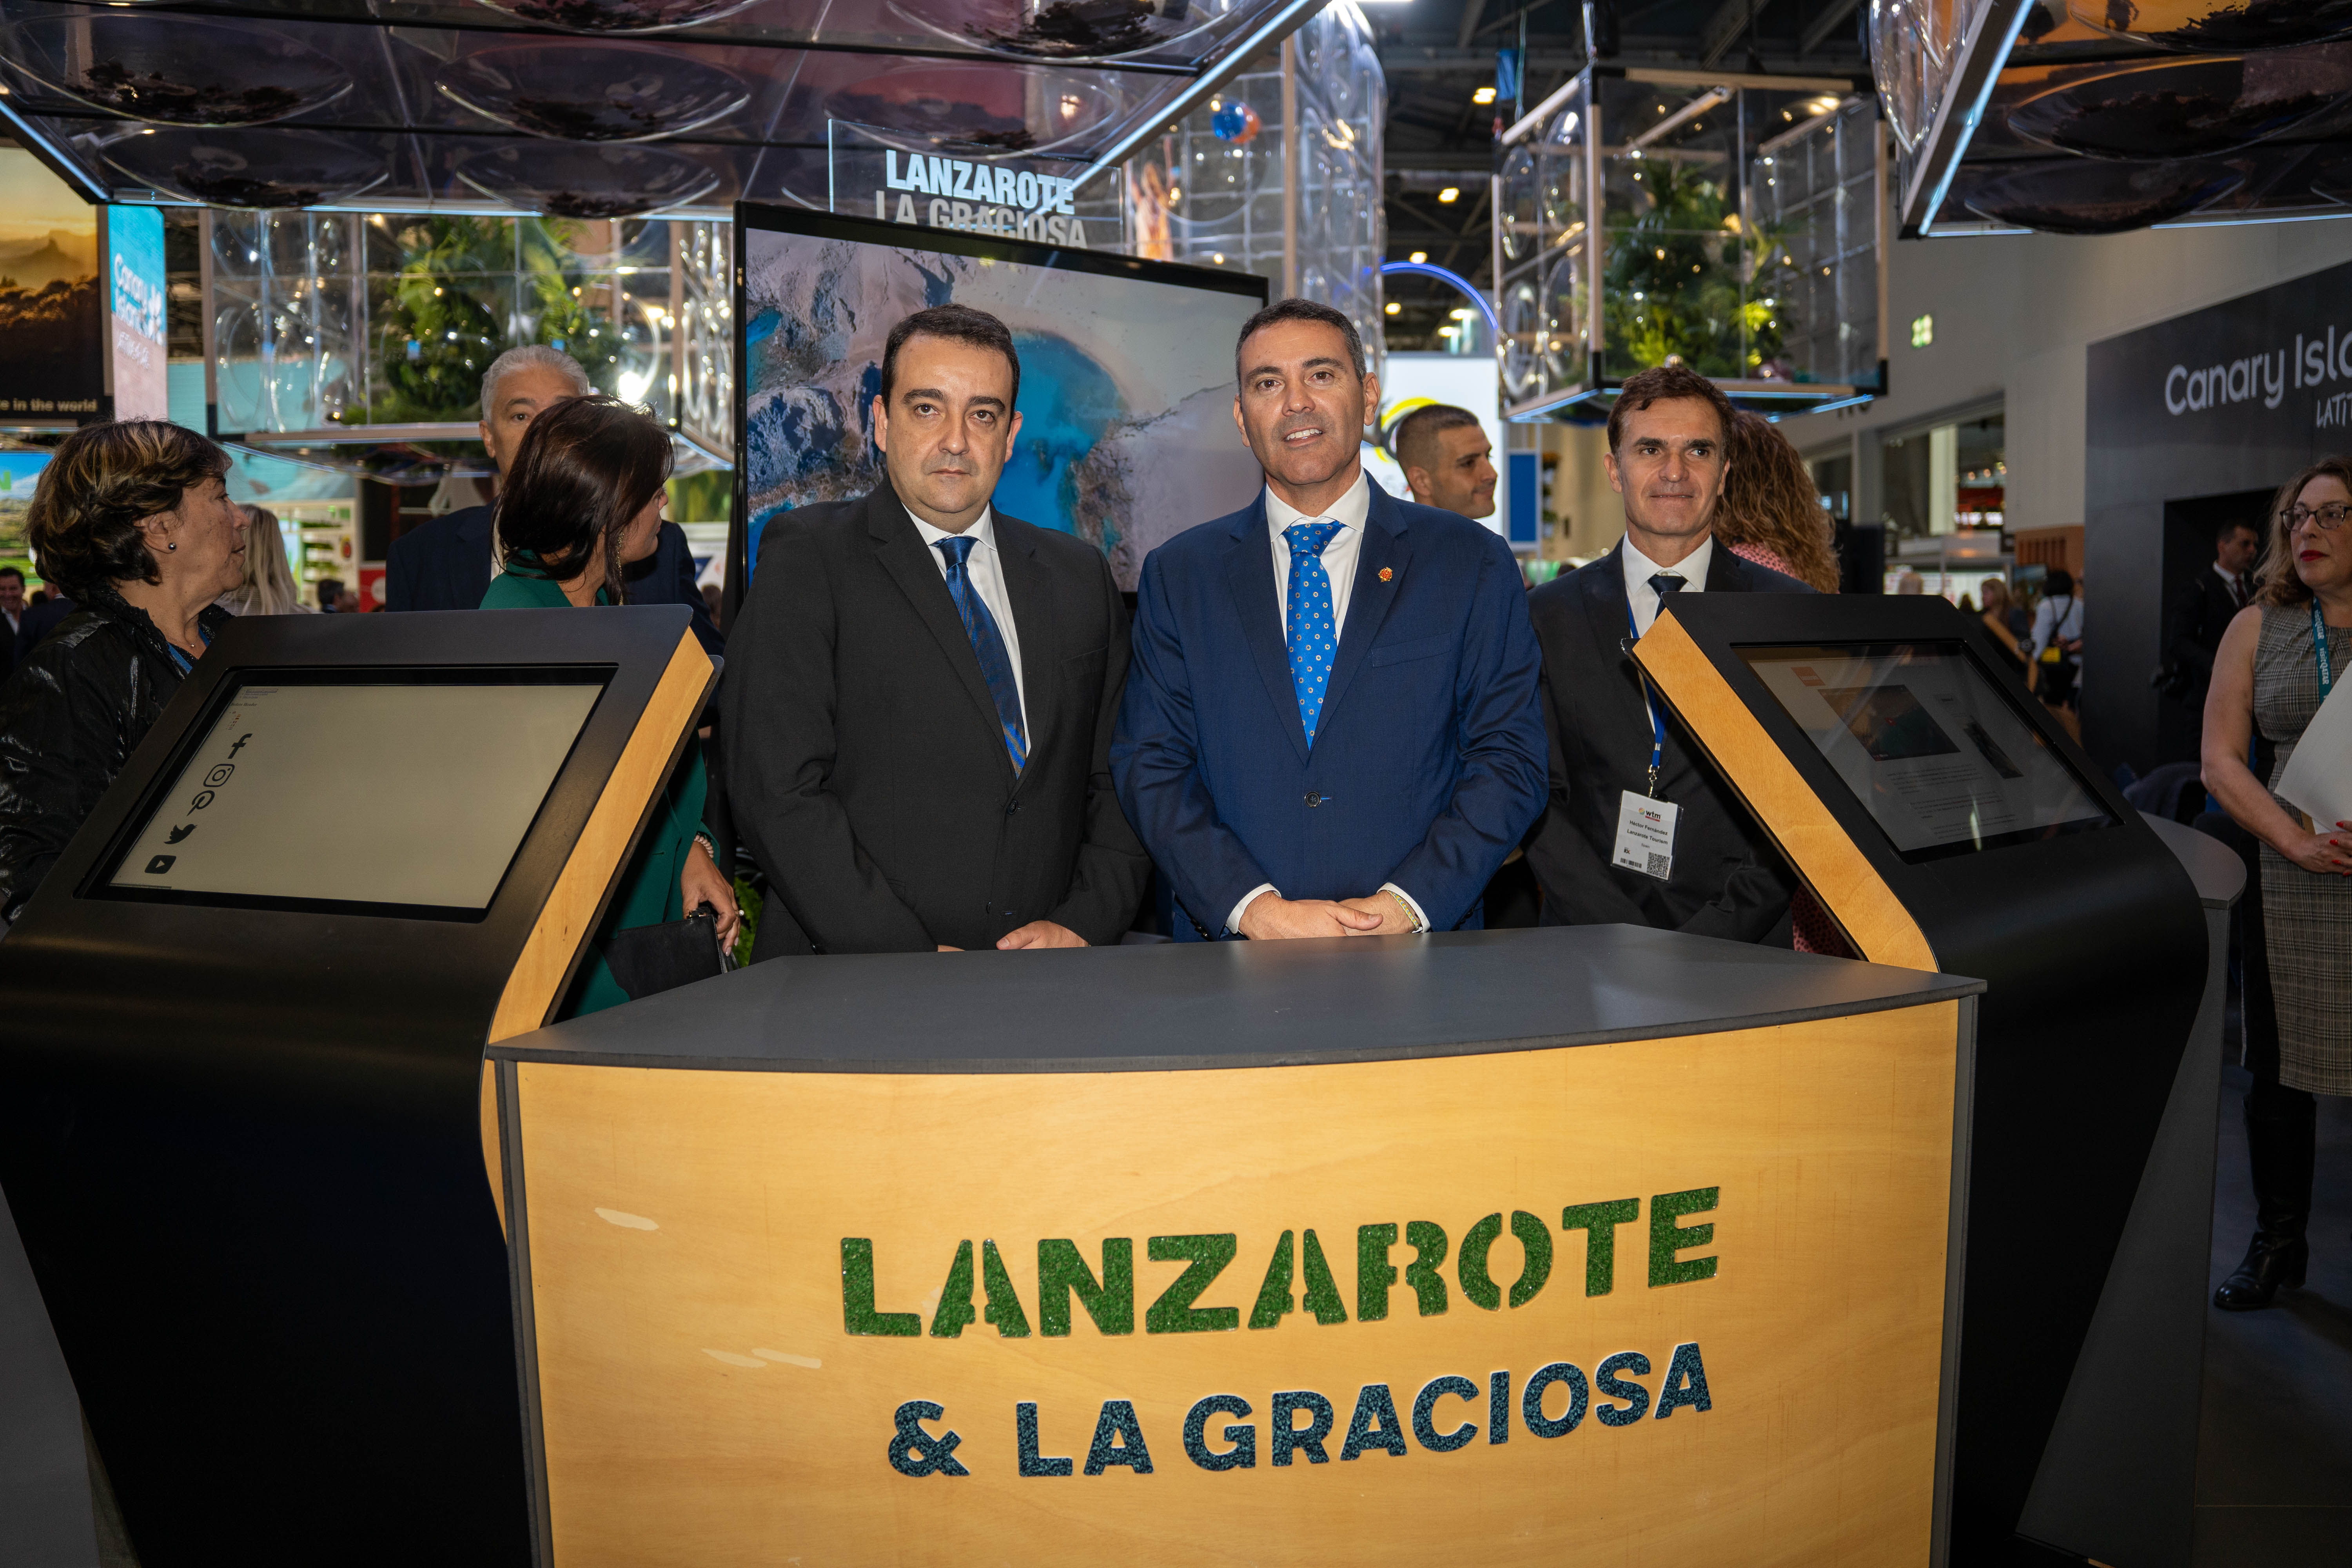 El presidente del Cabildo de Lanzarote, Oswaldo Betancort, y el presidente de la Cámara de Comercio de Lanzarote y La Graciosa, José Valle